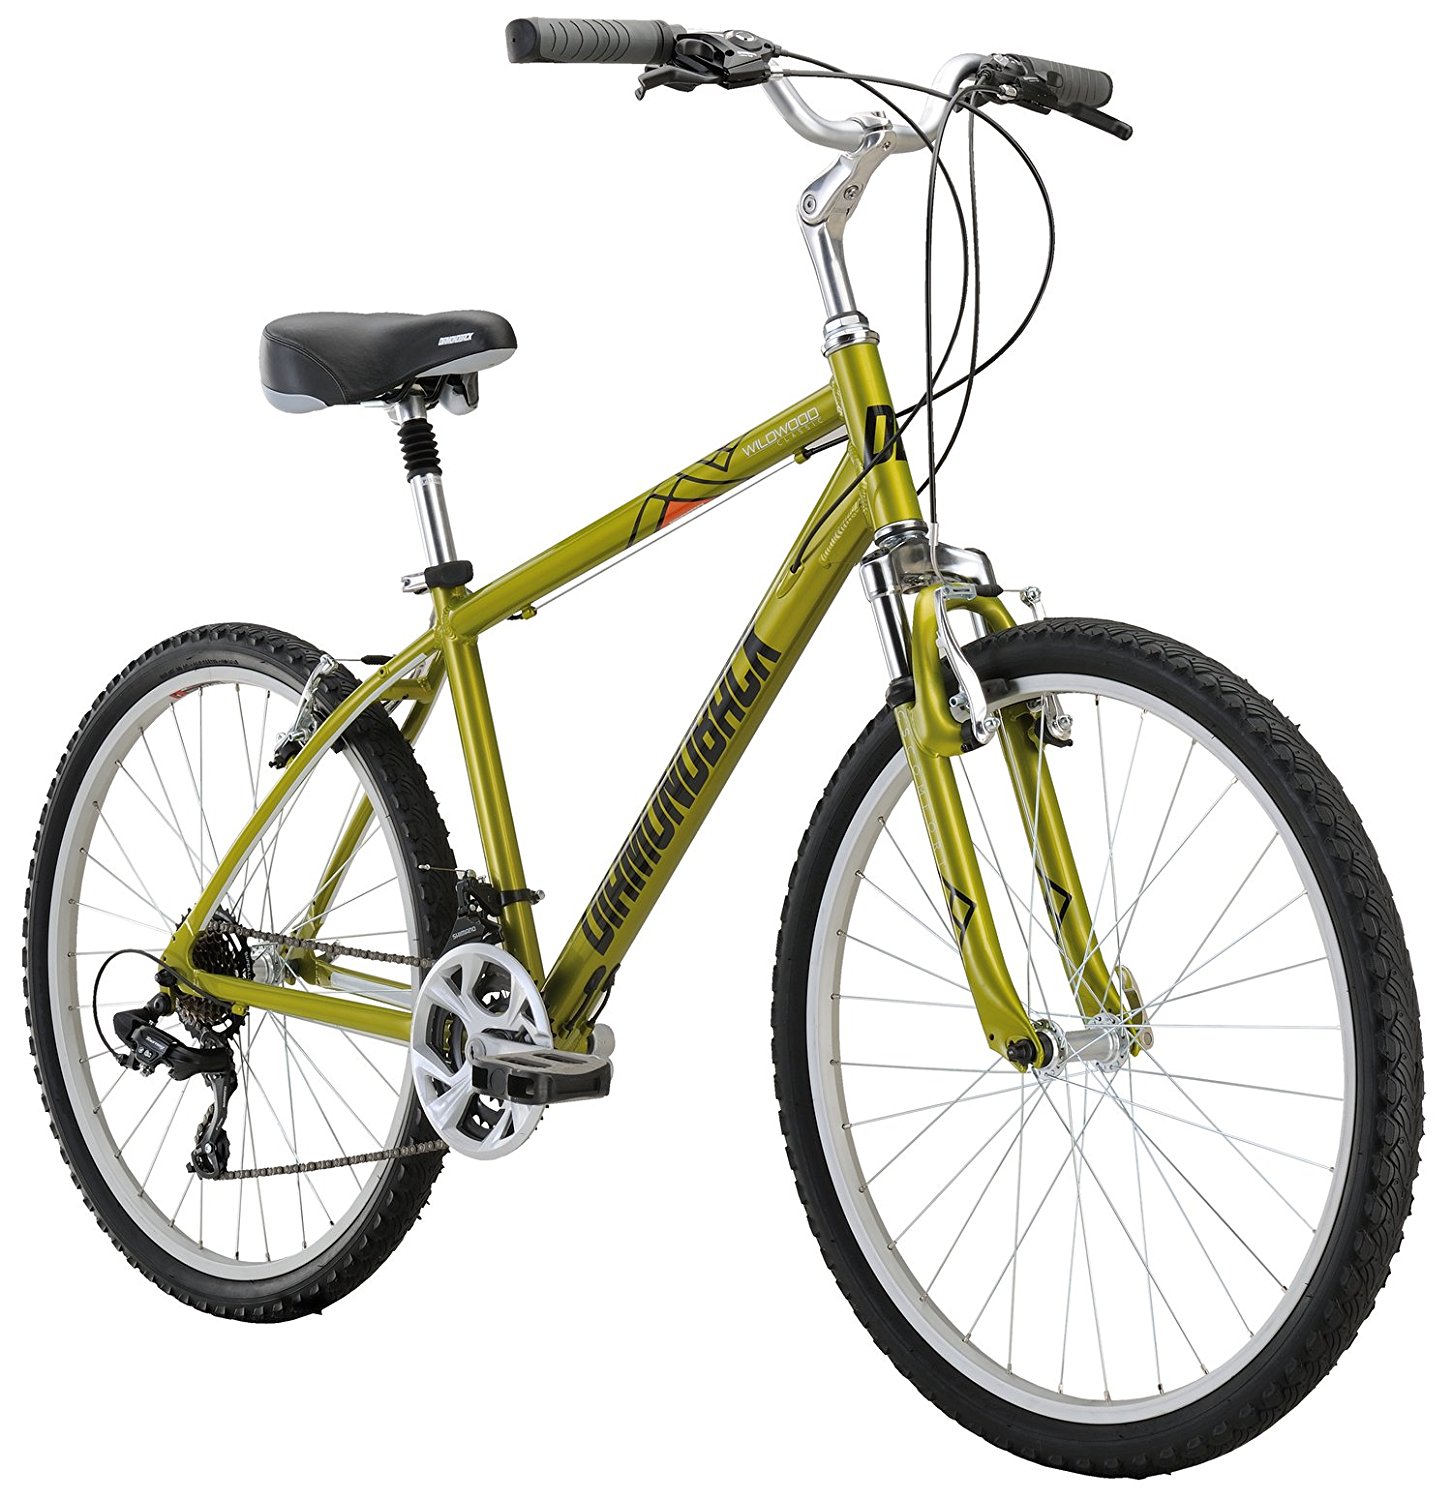 Classic comfort. Велосипед комфорт. Велосипед Green Comfort. Wildwood велосипед. Diamondback Bicycles.